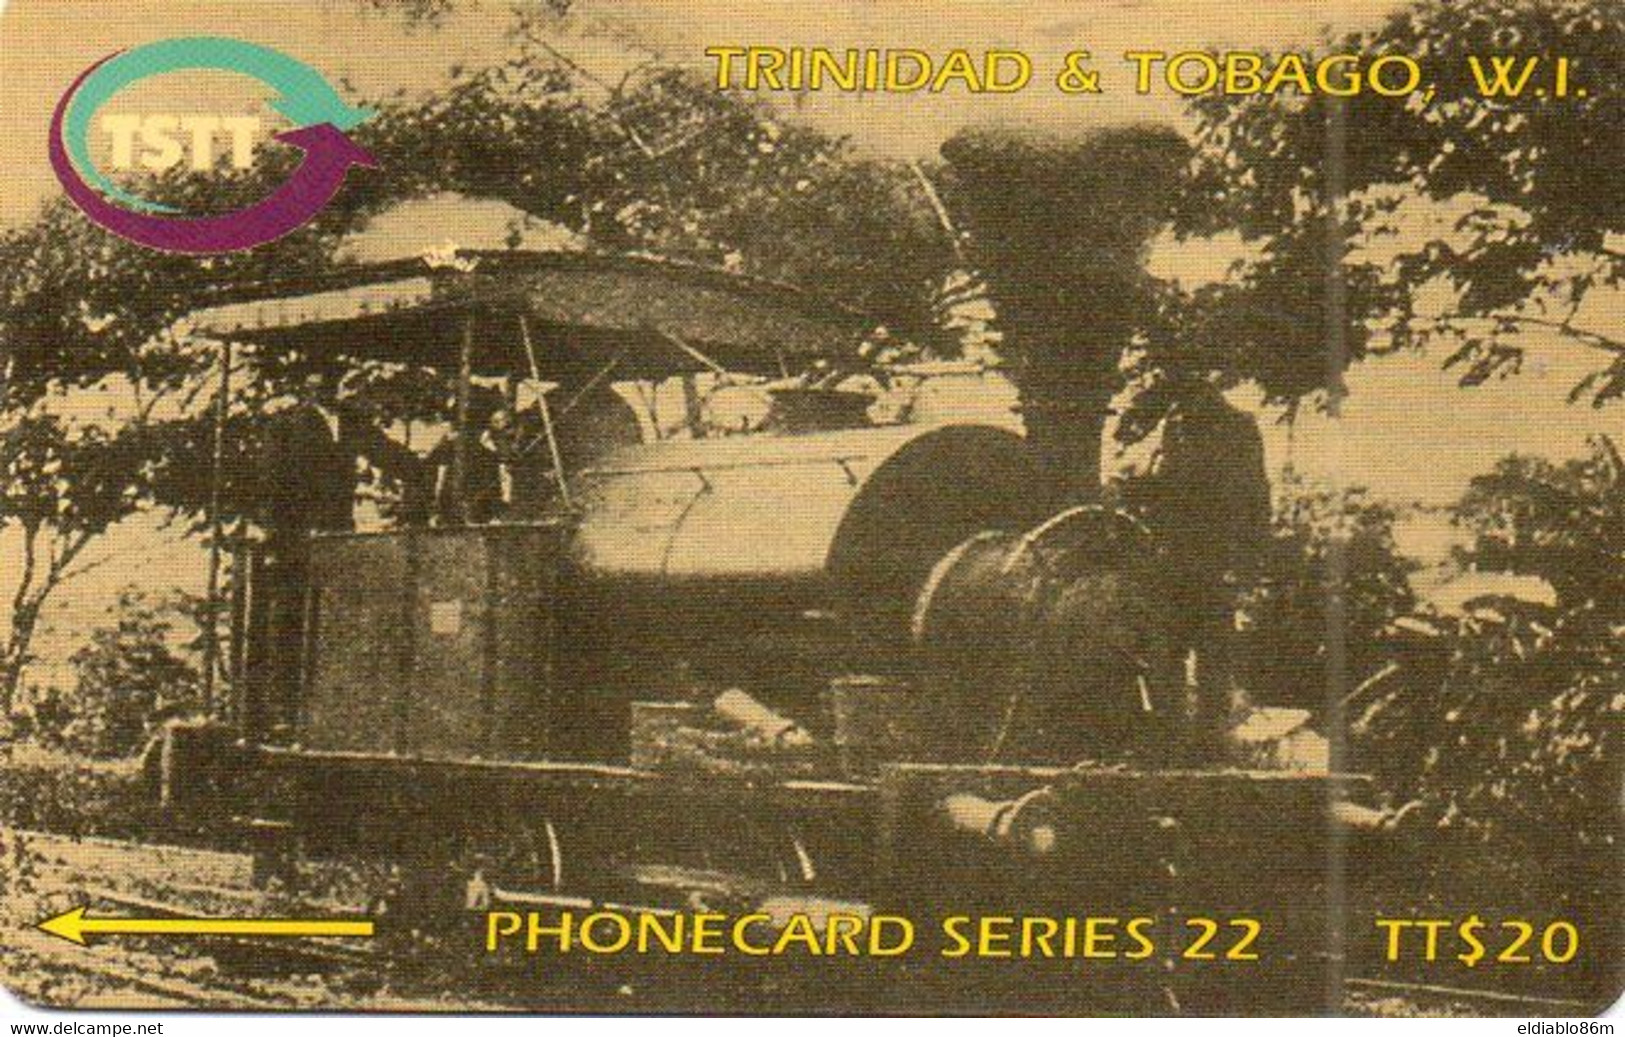 TRINIDAD & TOBAGO - GPT - 205CTTD - THE FIRST TRAIN TO SAN FERNANDO 1892 - Trinidad & Tobago